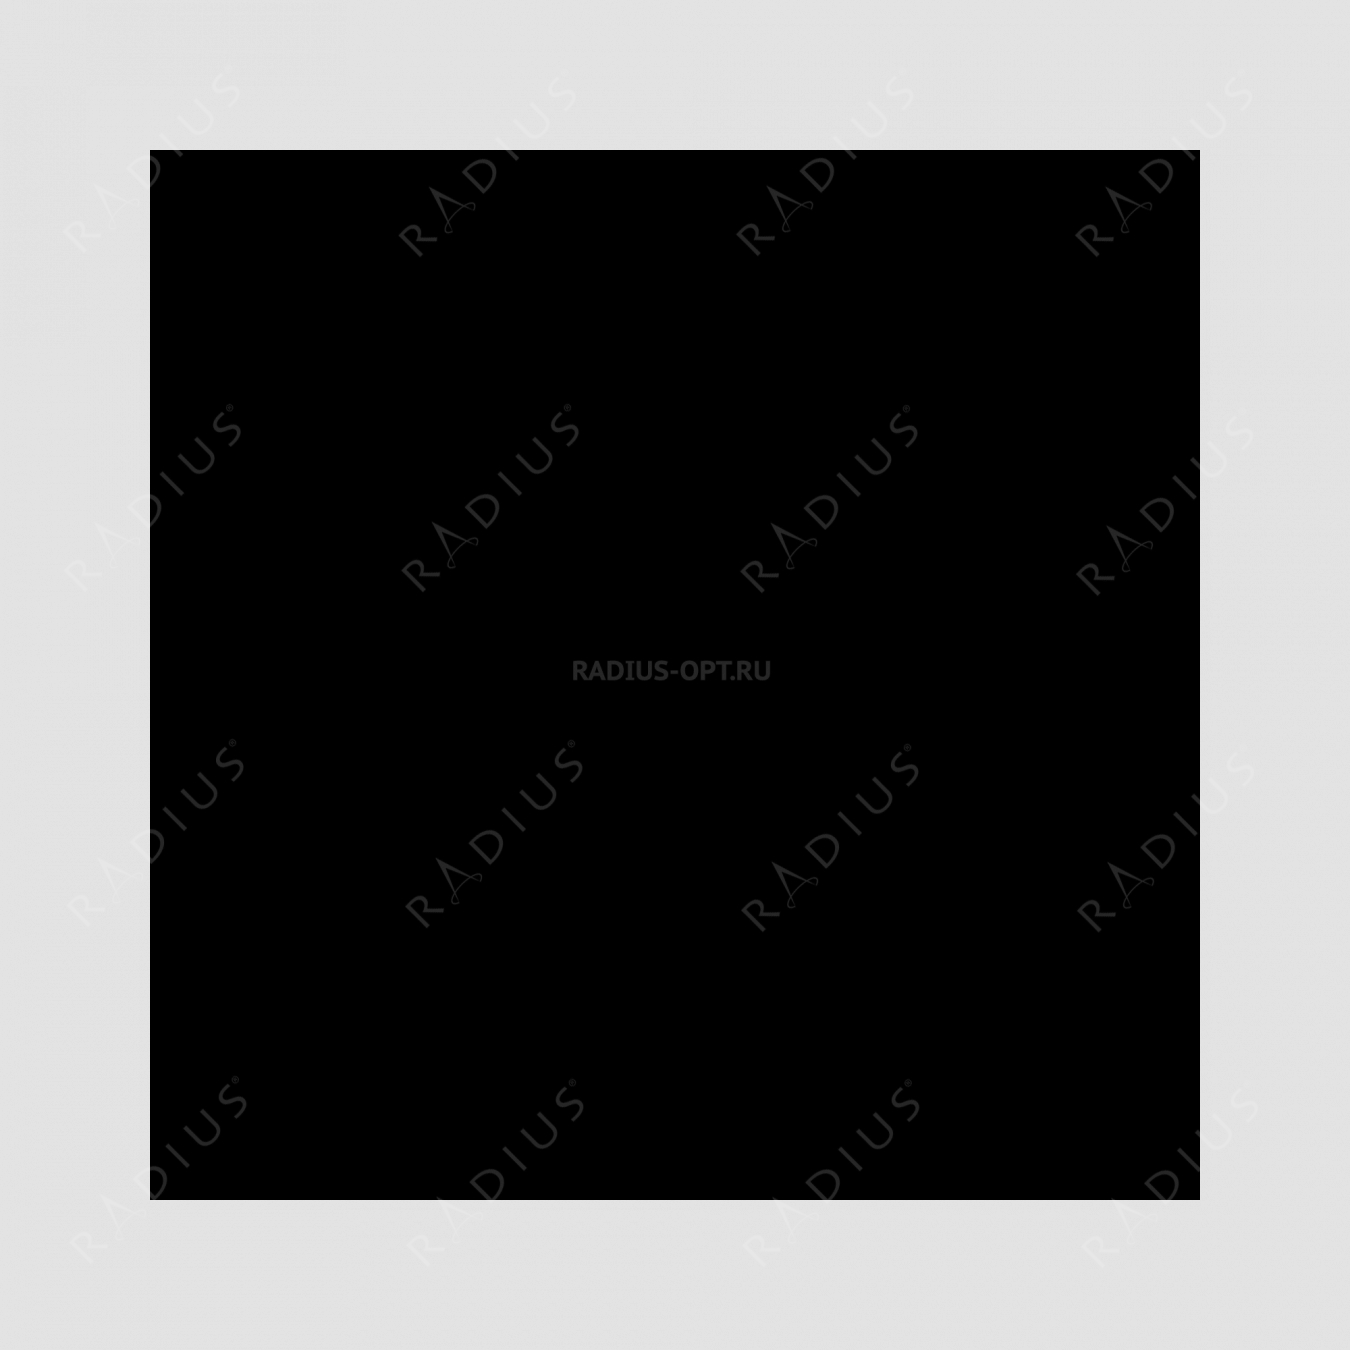 Кастрюля со стеклянной крышкой, диаметр 24 см, объем 3,8 л, чугун с эмалированным покрытием, цвет темно-серый, серия Taupe, INVICTA, Франция